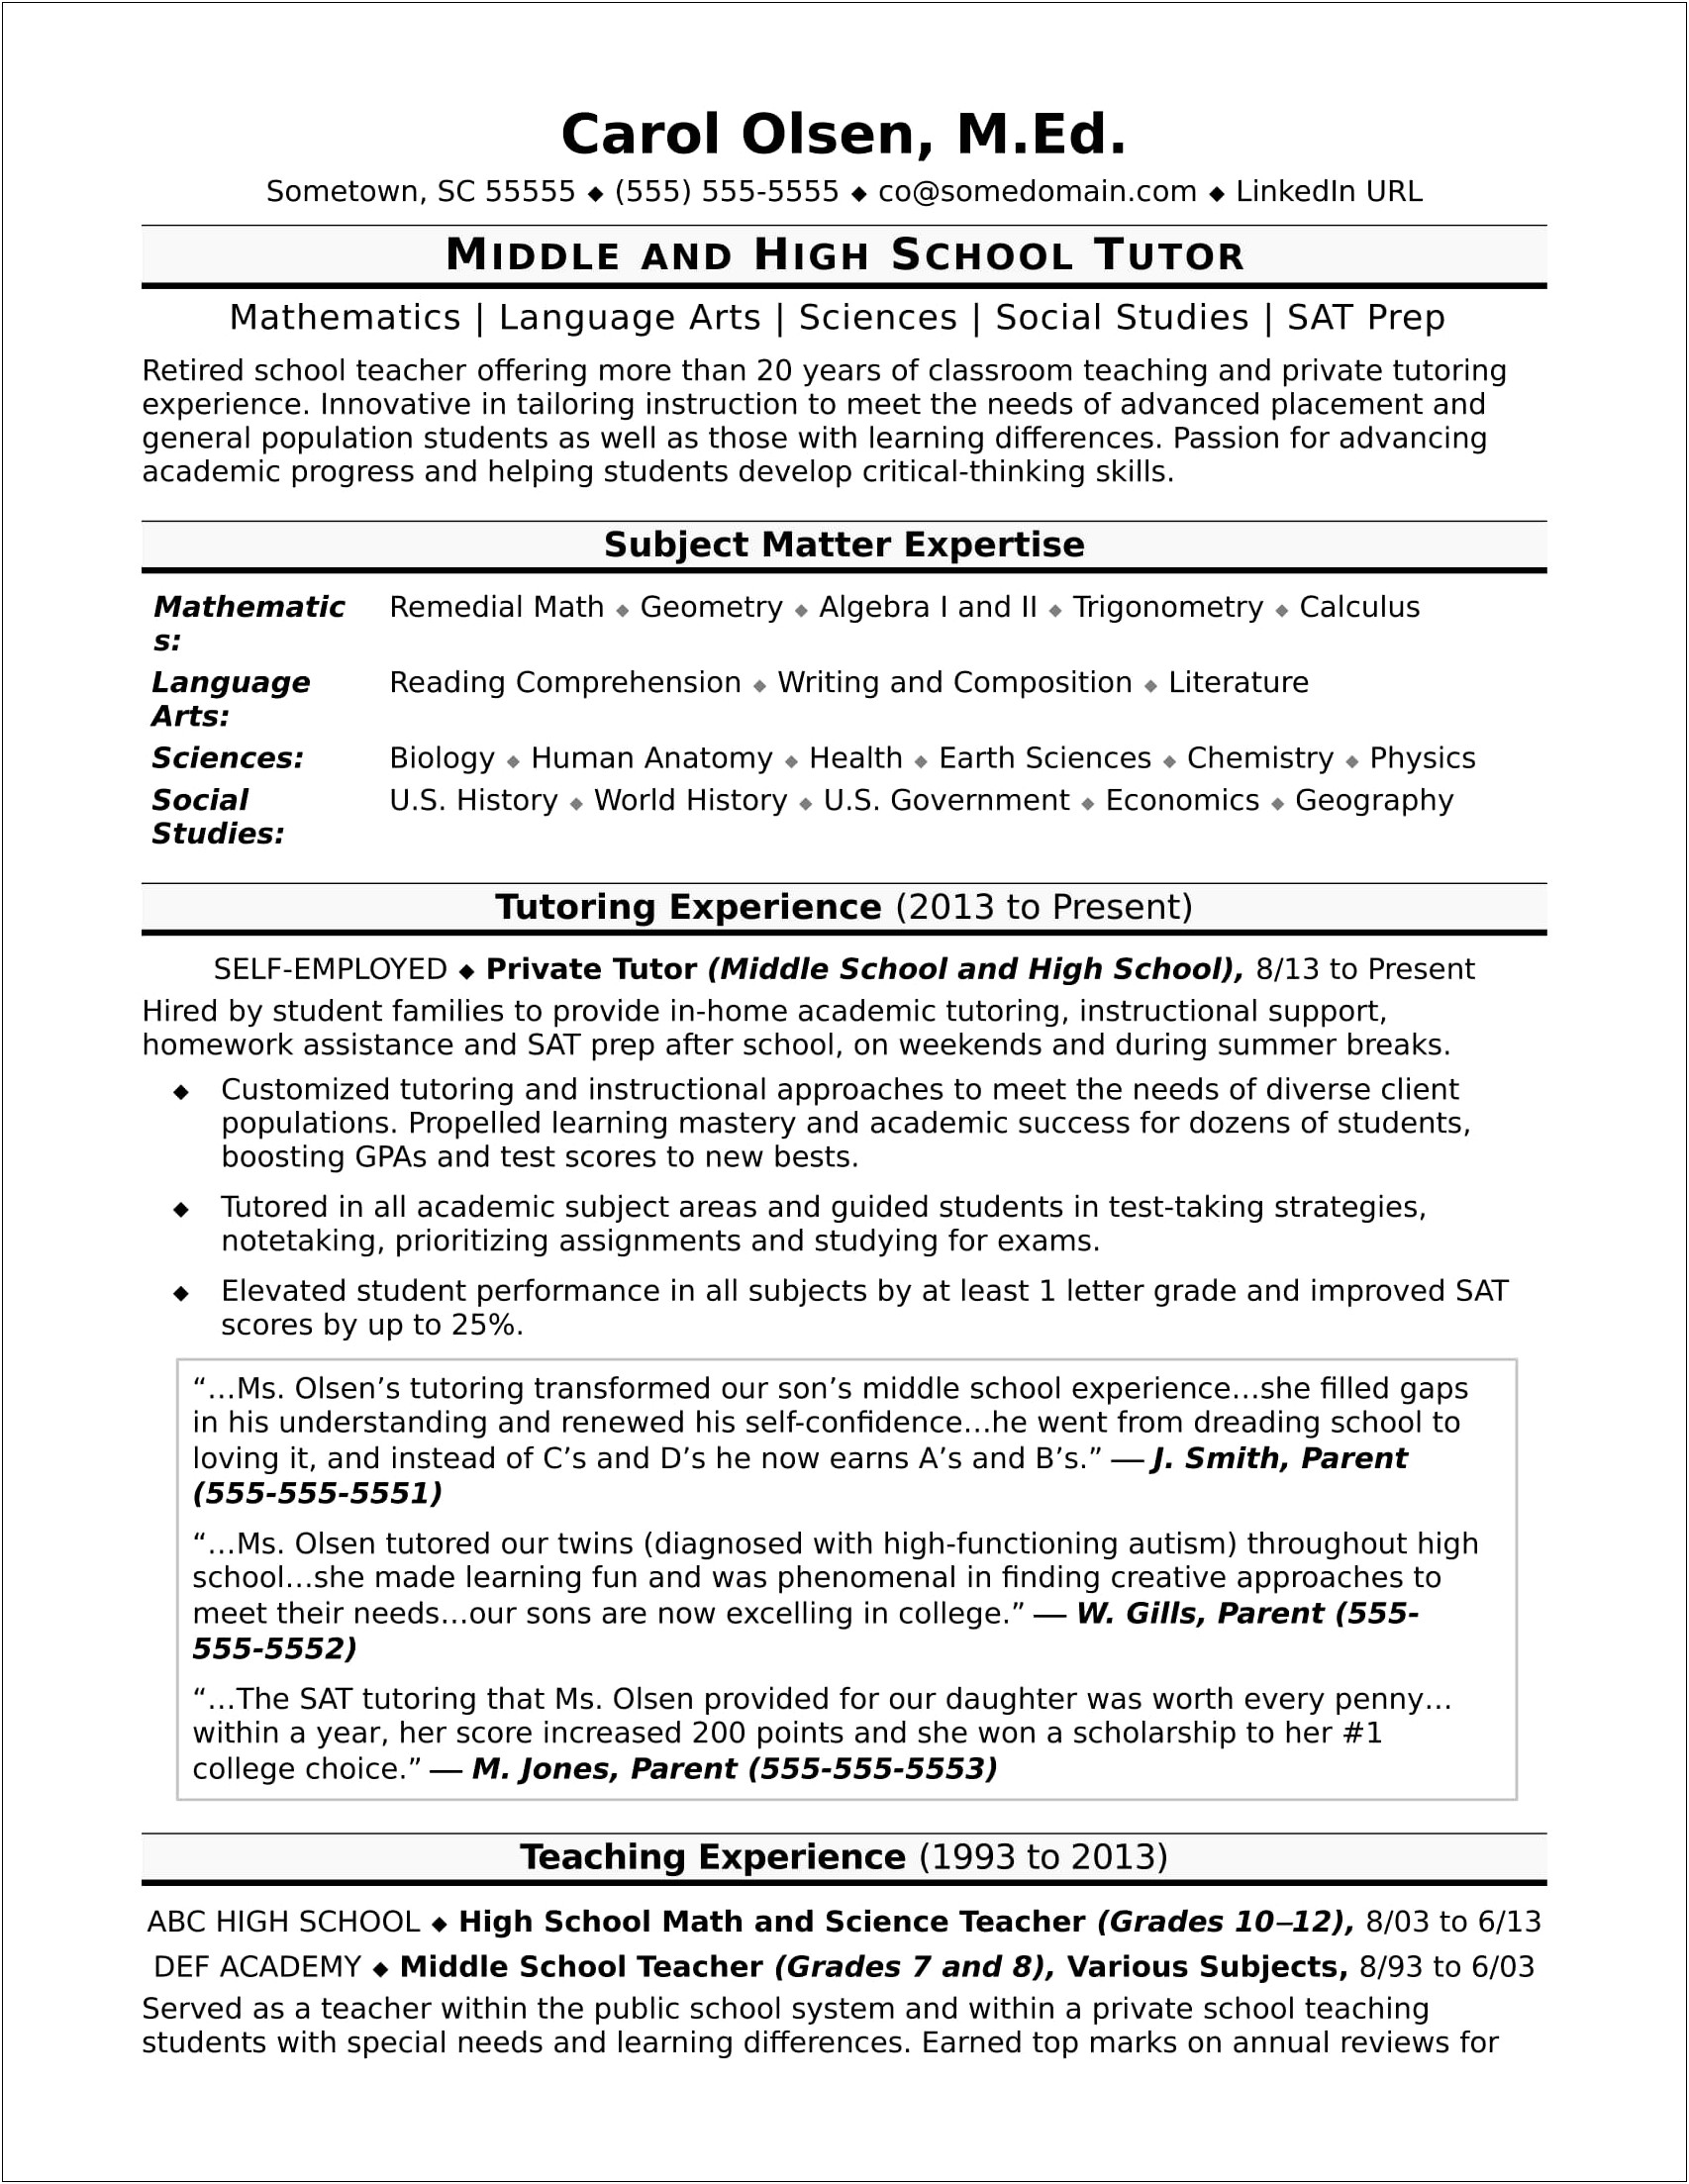 Resume Format For High School Teacher